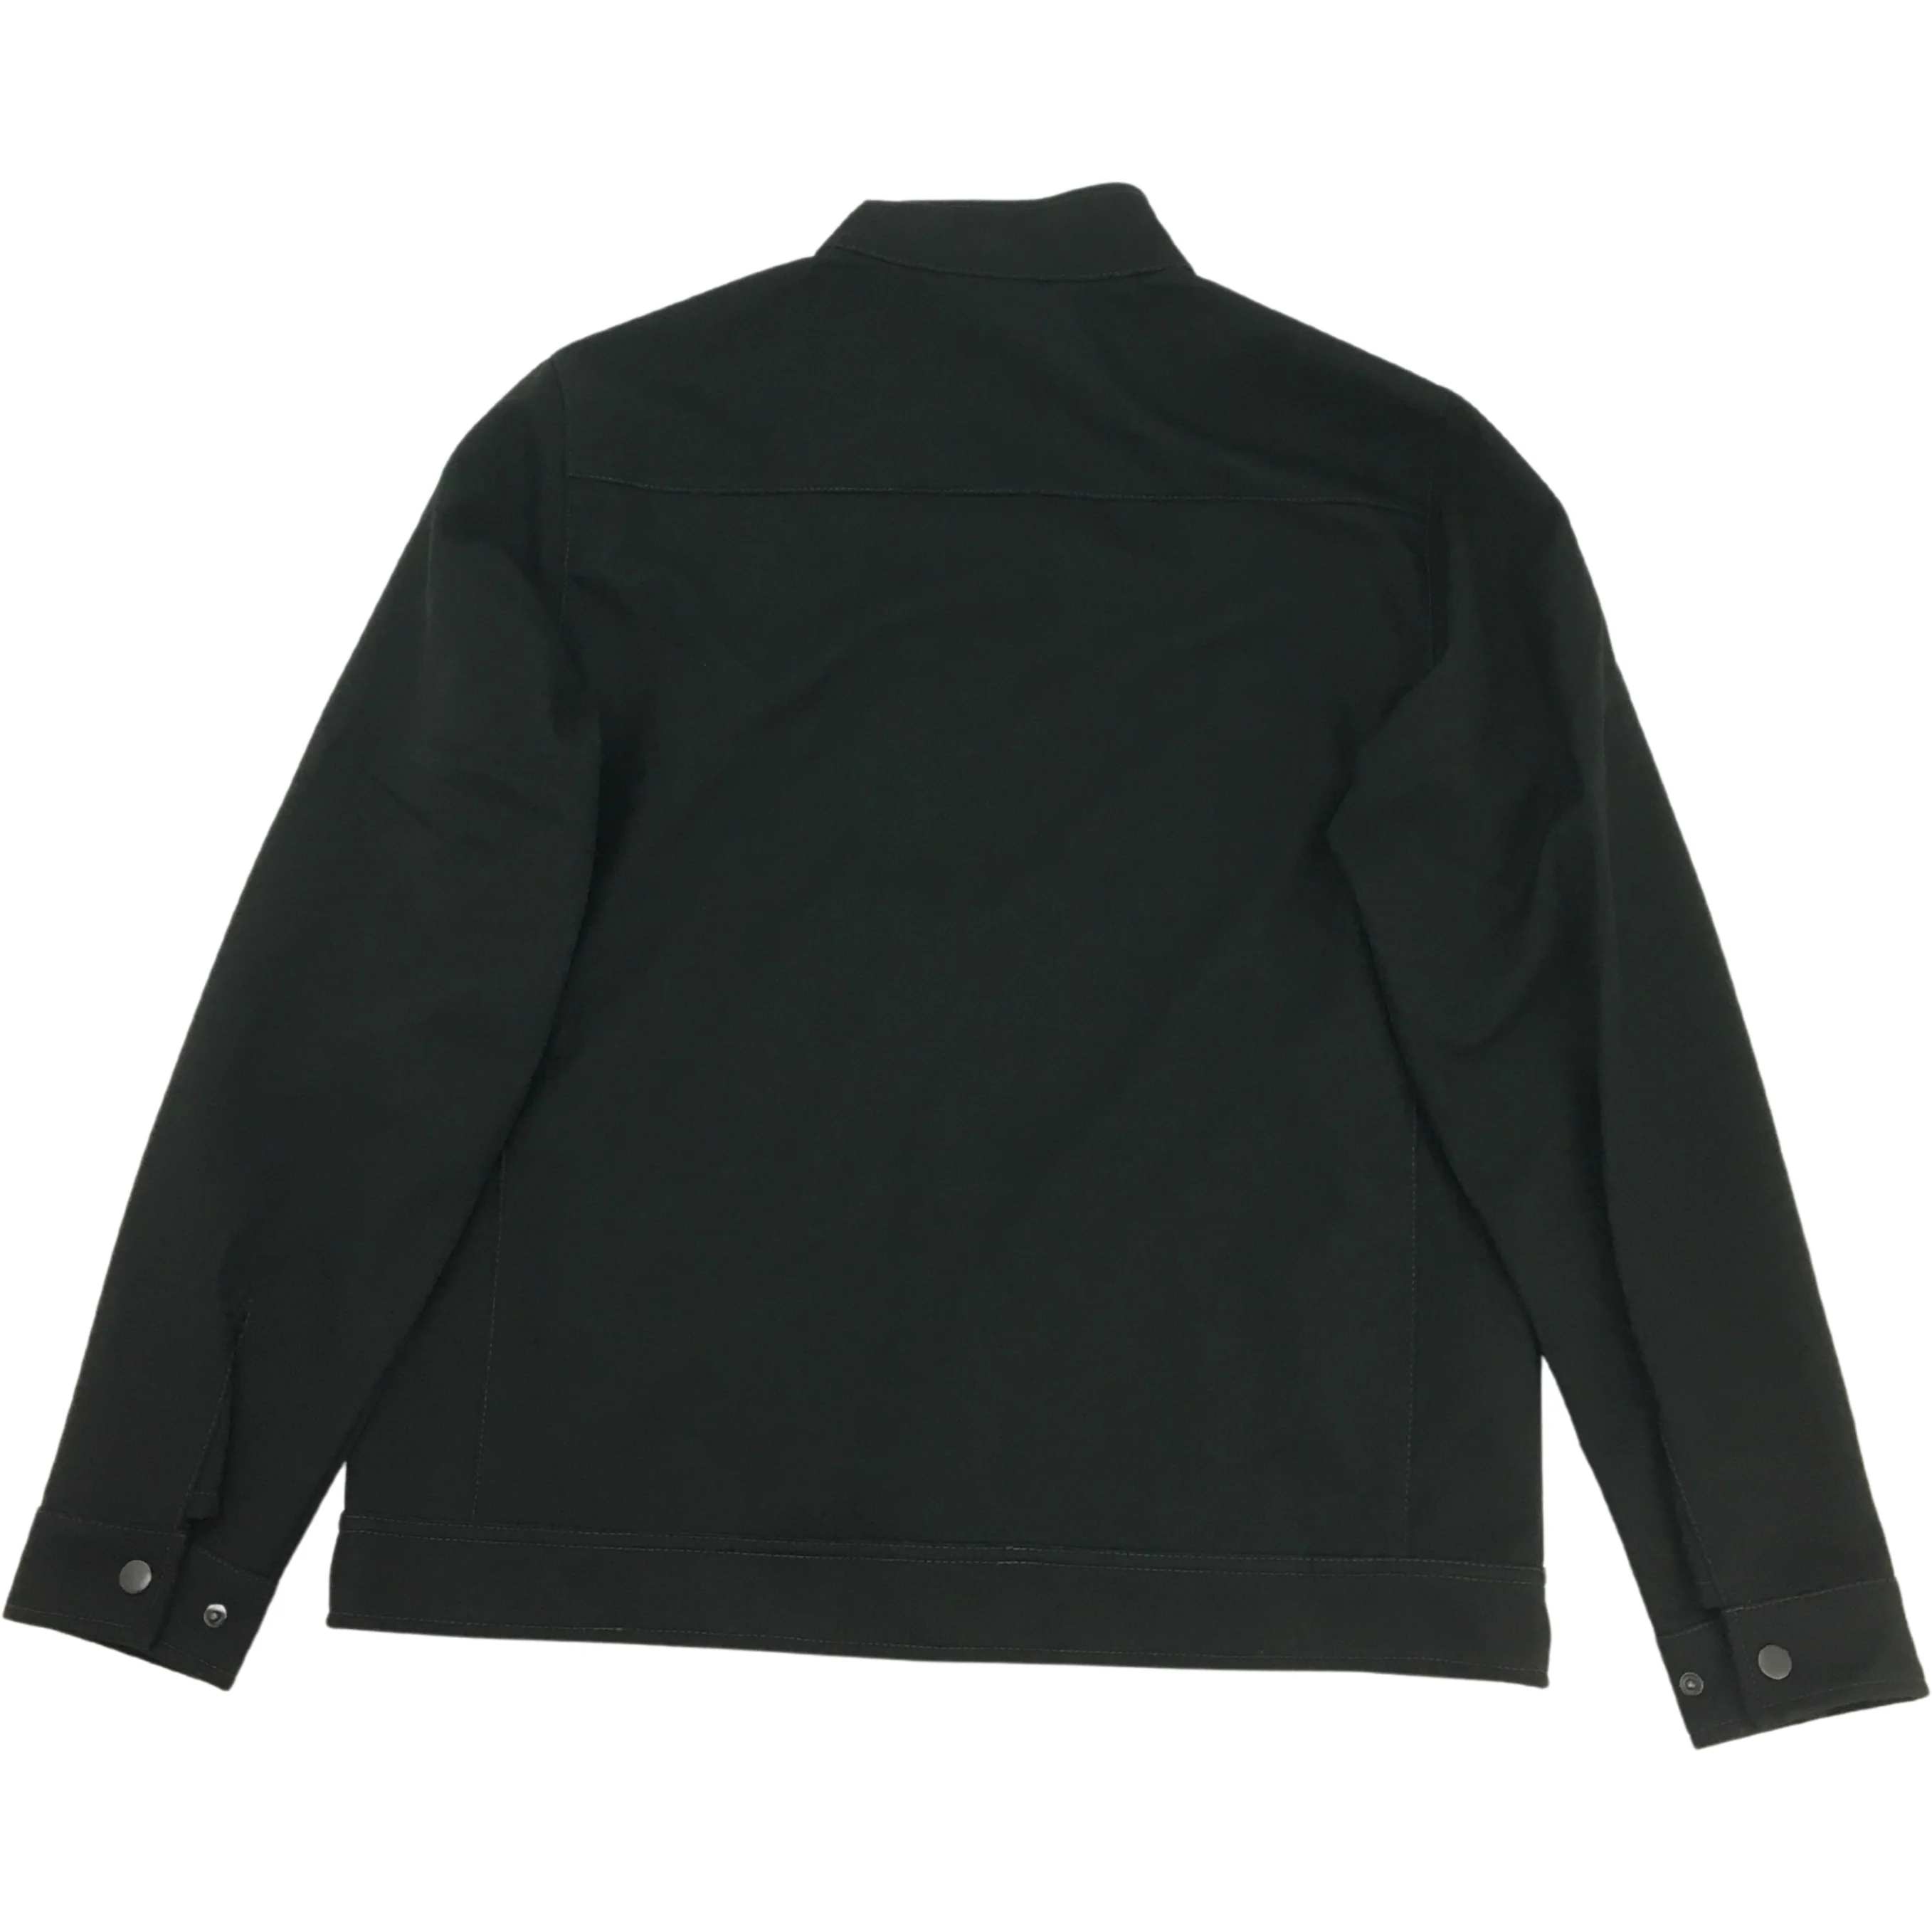 Kirkland / Men's Soft Shell Jacket / Medium / Black